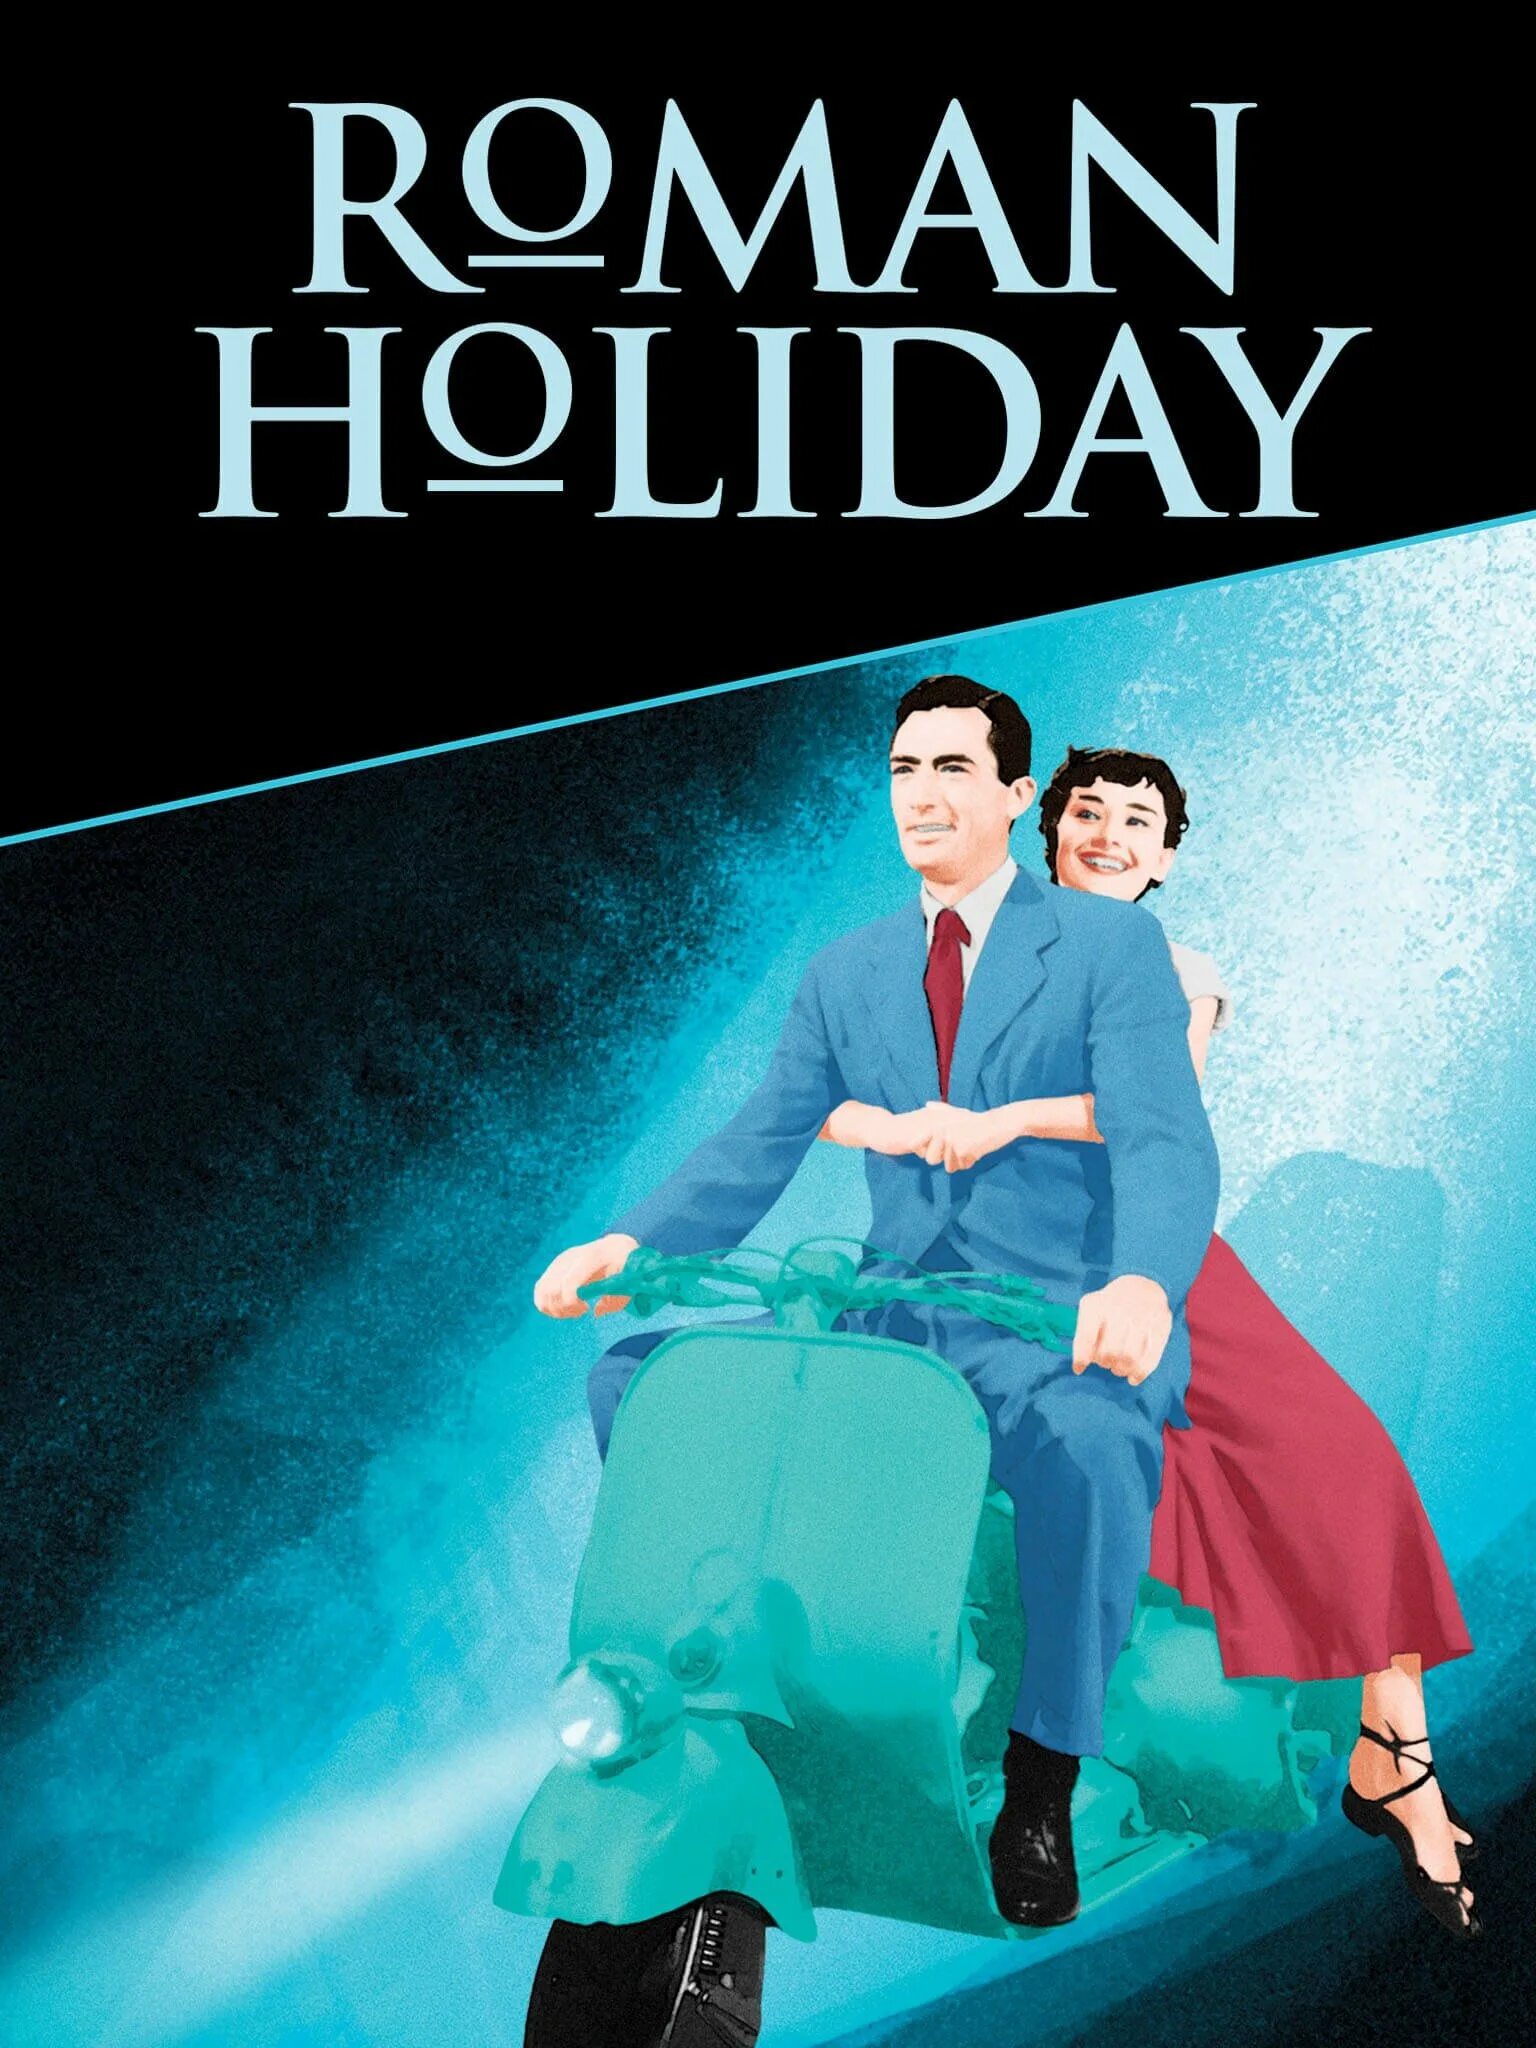 Roman holiday. Roman Holiday 1953. Roman Holiday 1953 poster. Римские каникулы (1953) постеры.